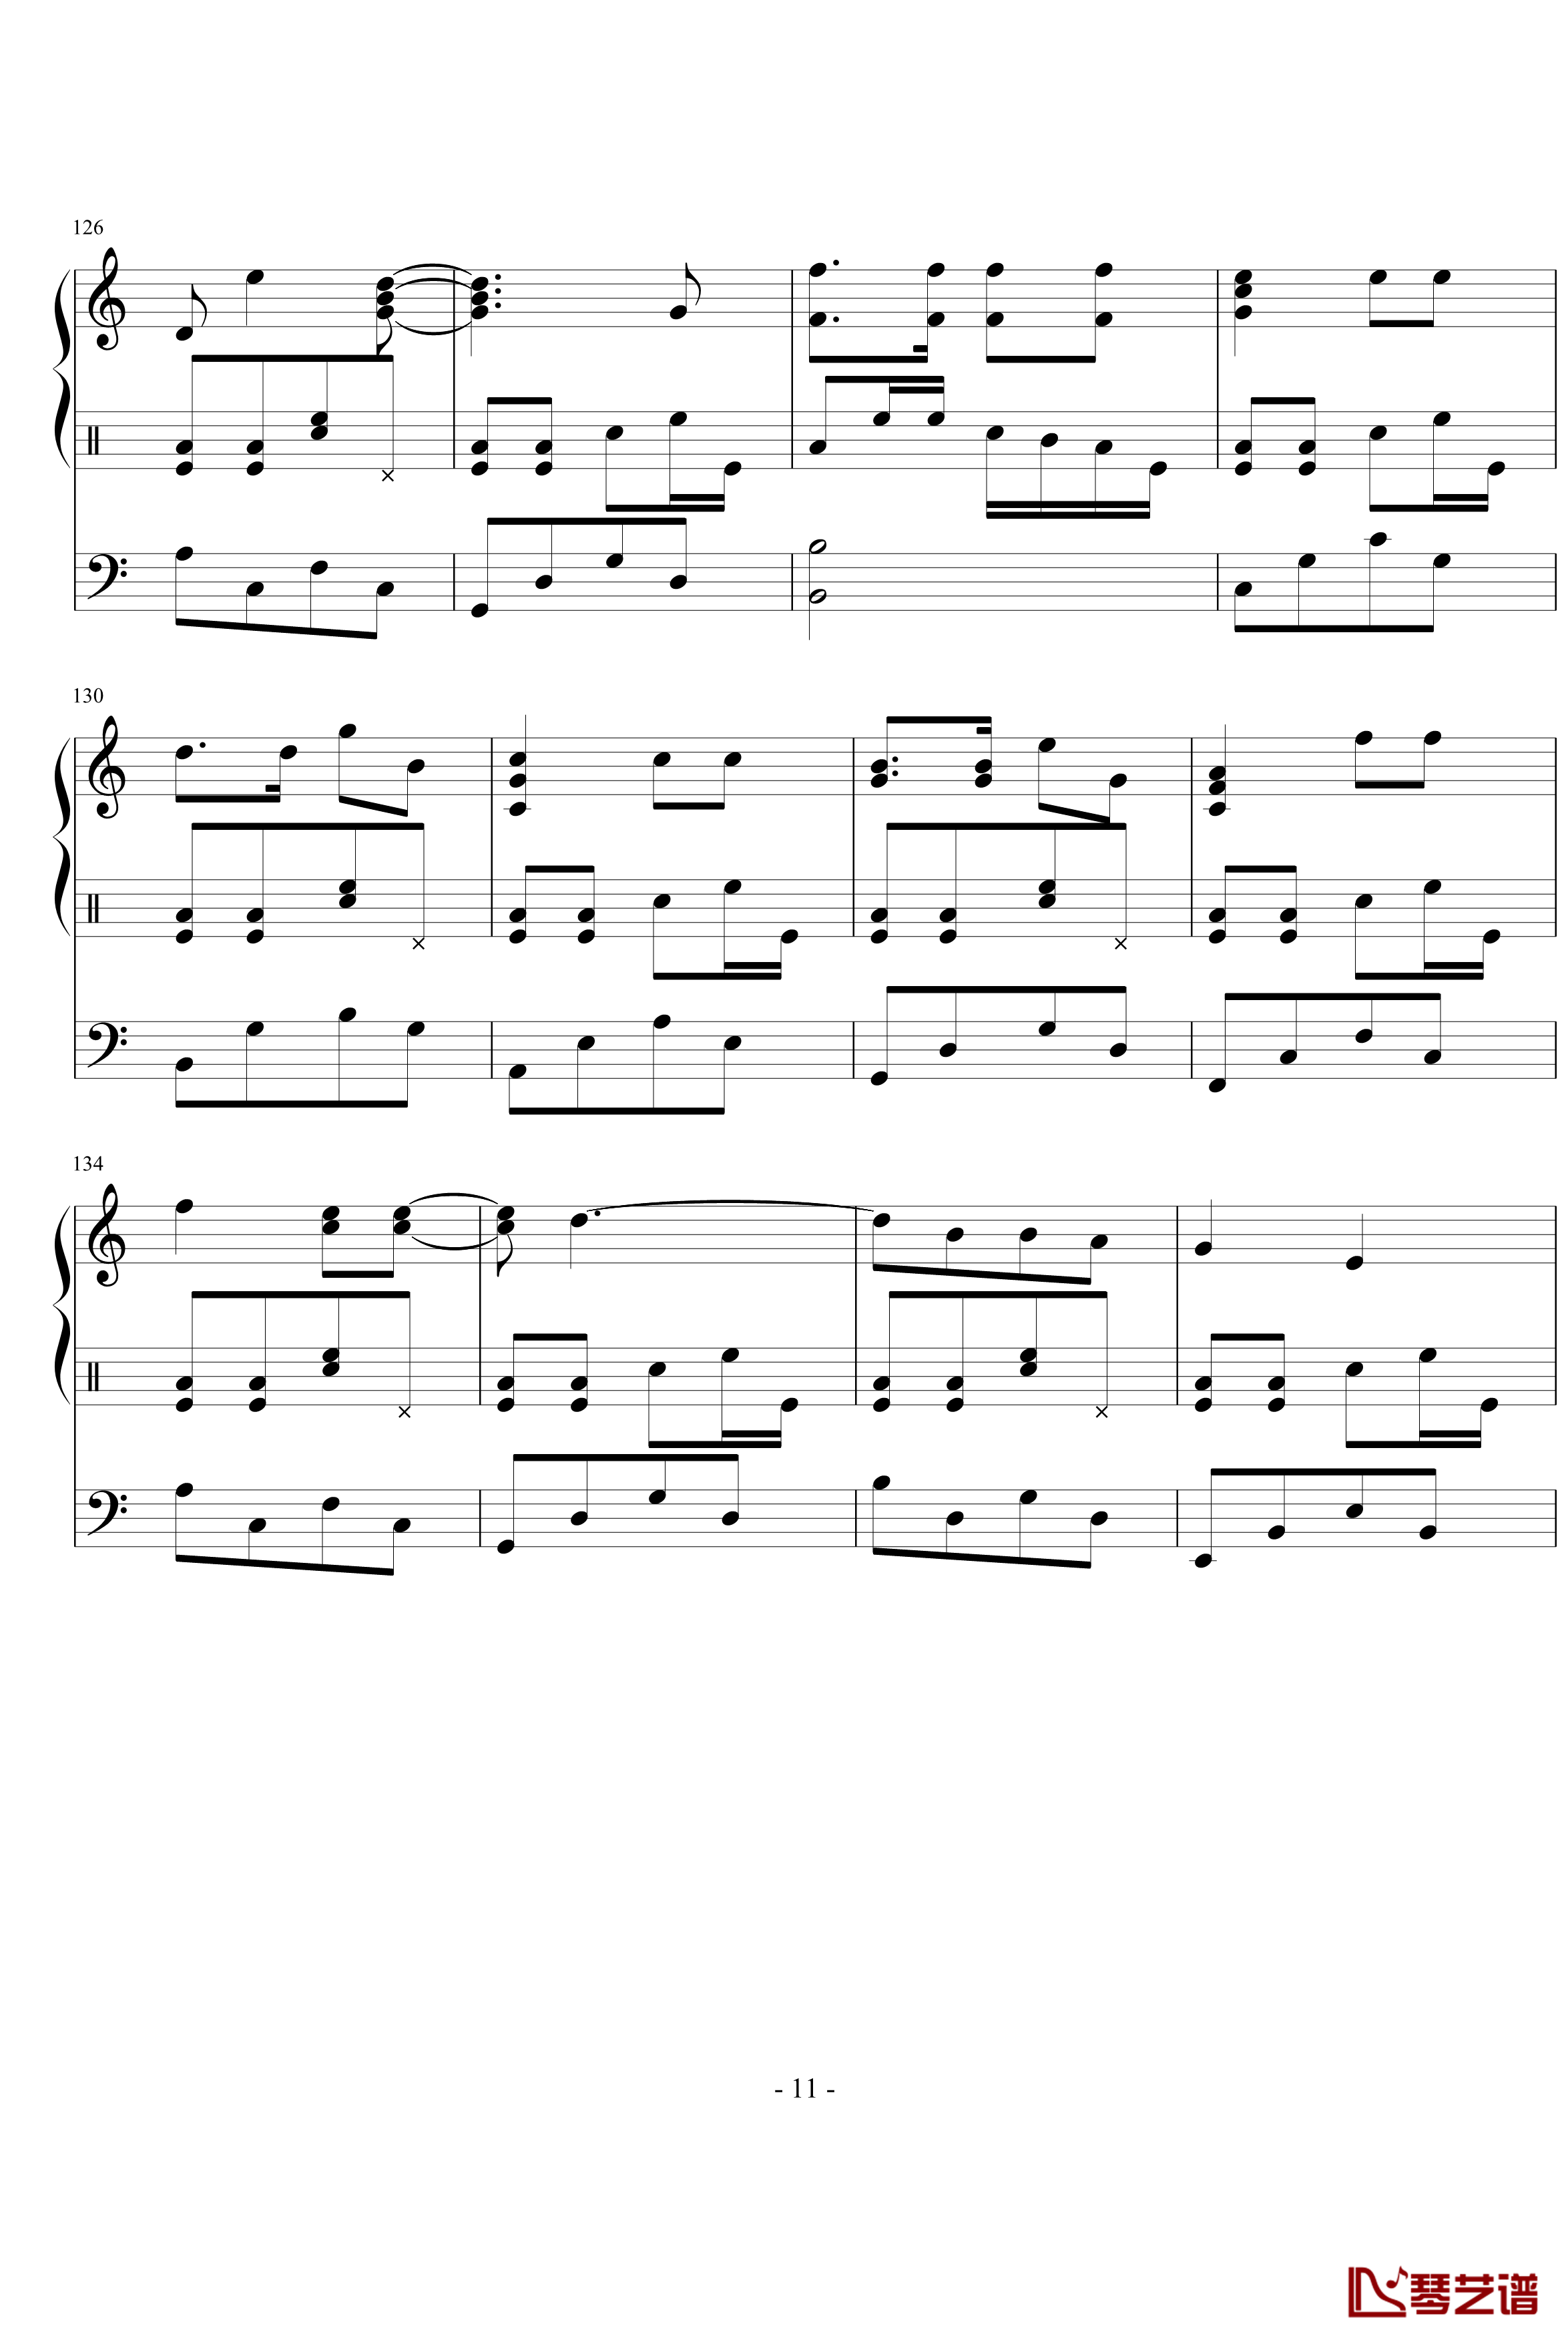 星月游乐园钢琴谱-199086hxy11